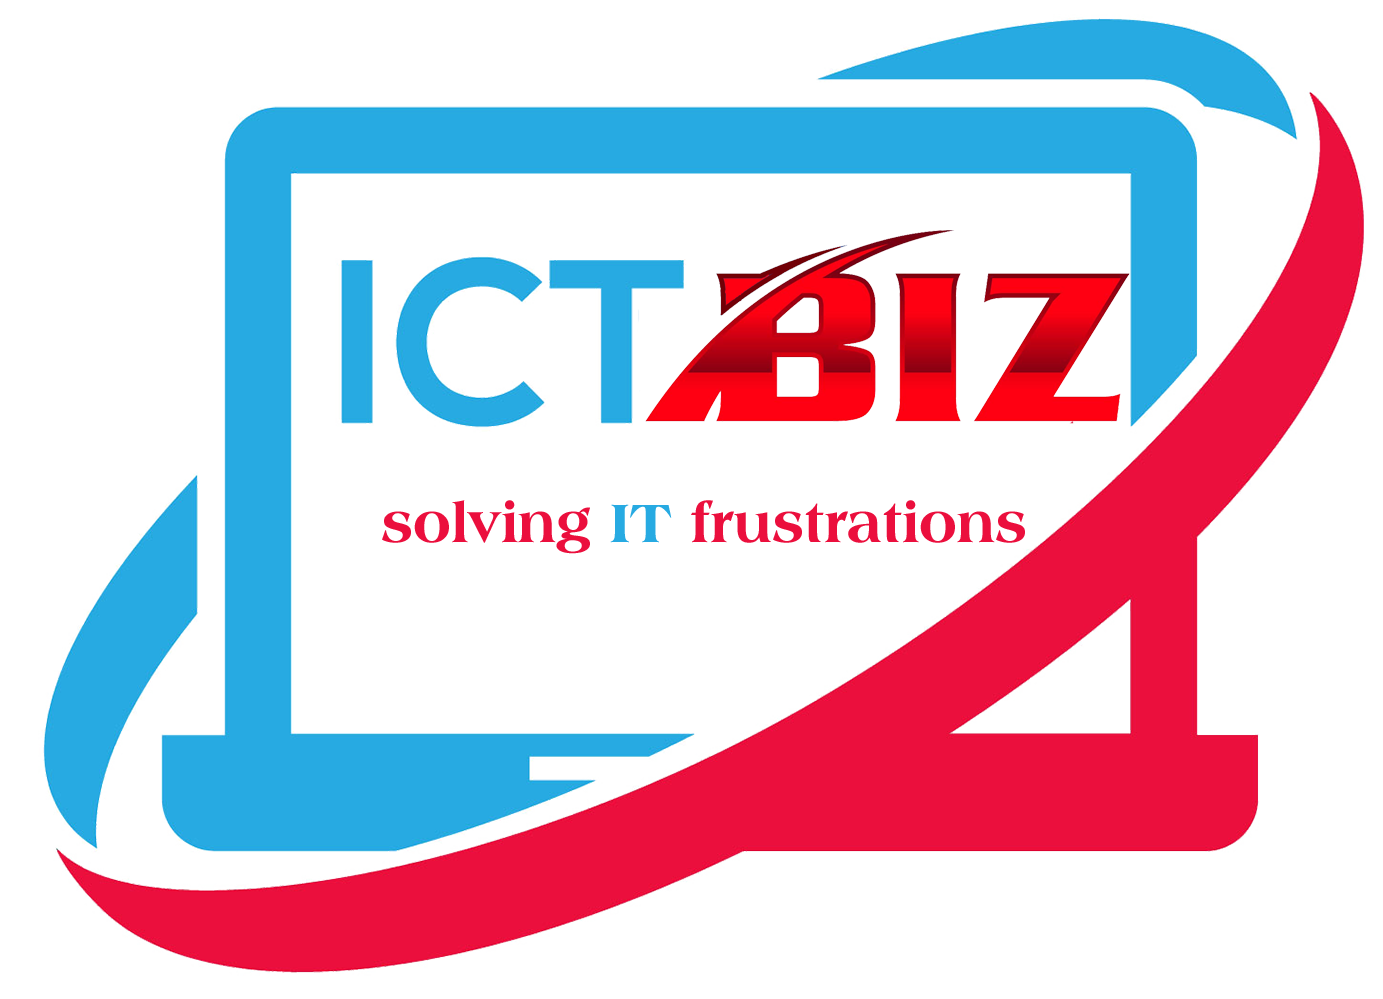 ICT BIZ